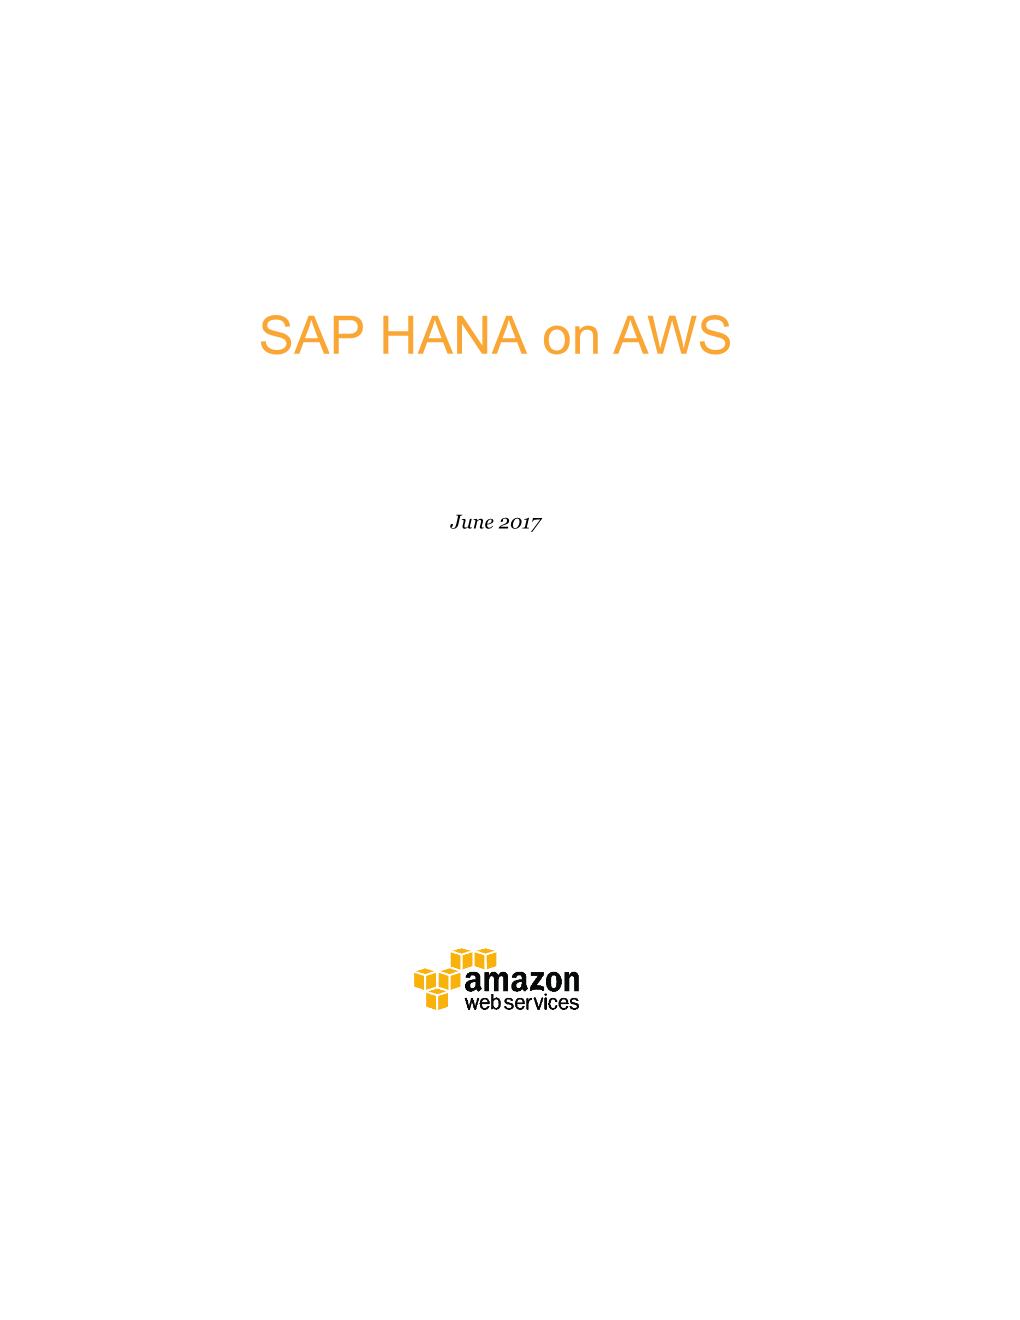 SAP HANA on AWS Overview